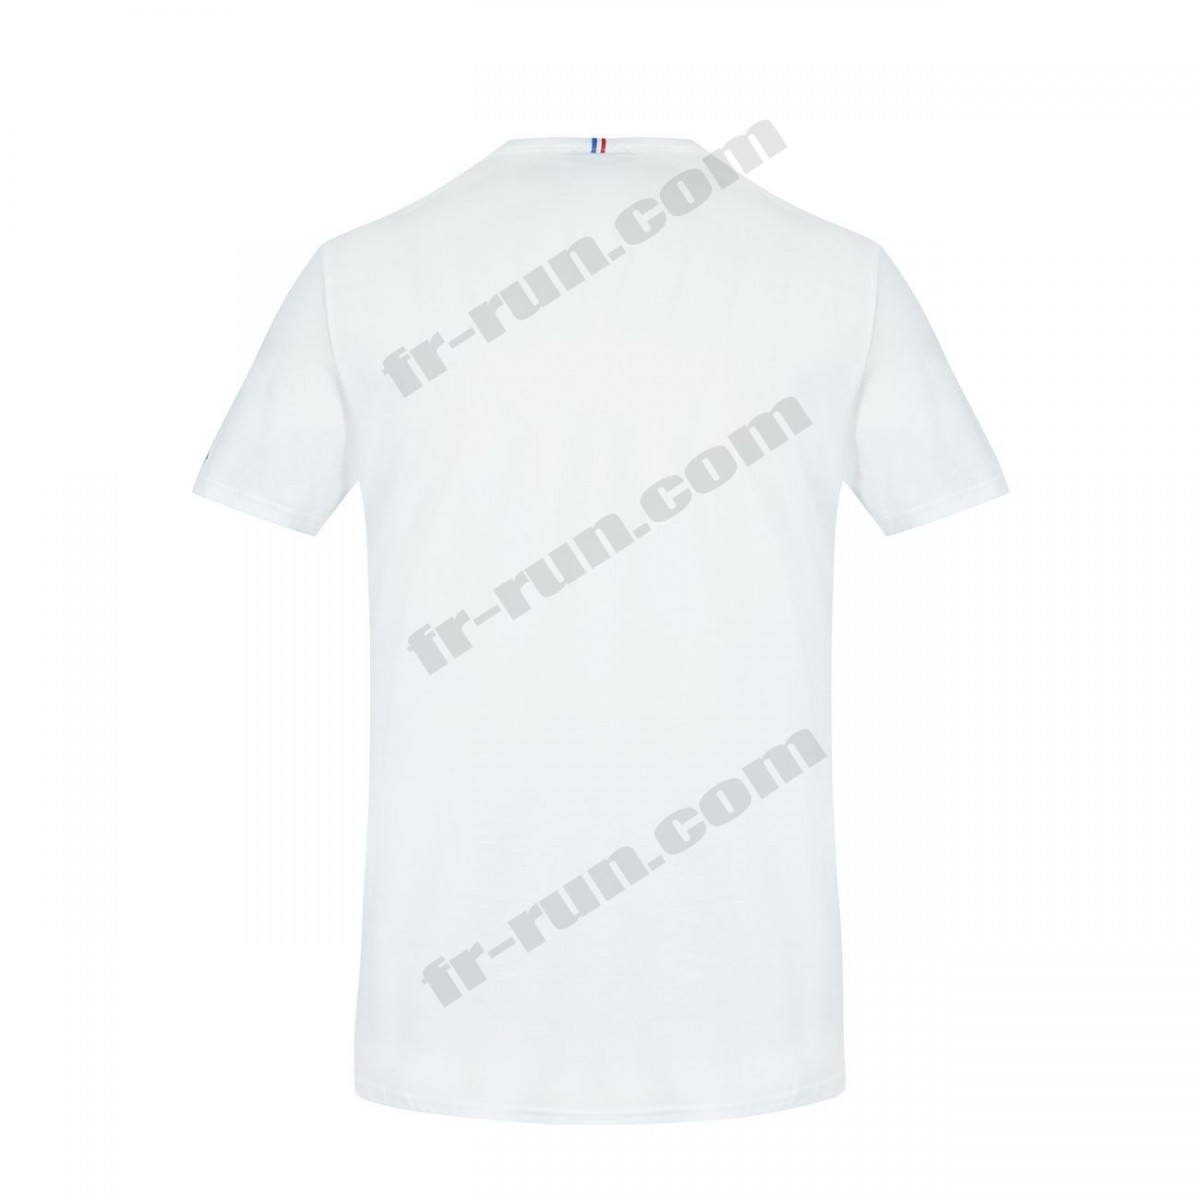 Le Coq Sportif/running adulte LE COQ SPORTIF T-shirt manches longues Équipe de France Olympique Unisexe √ Nouveau style √ Soldes - -5